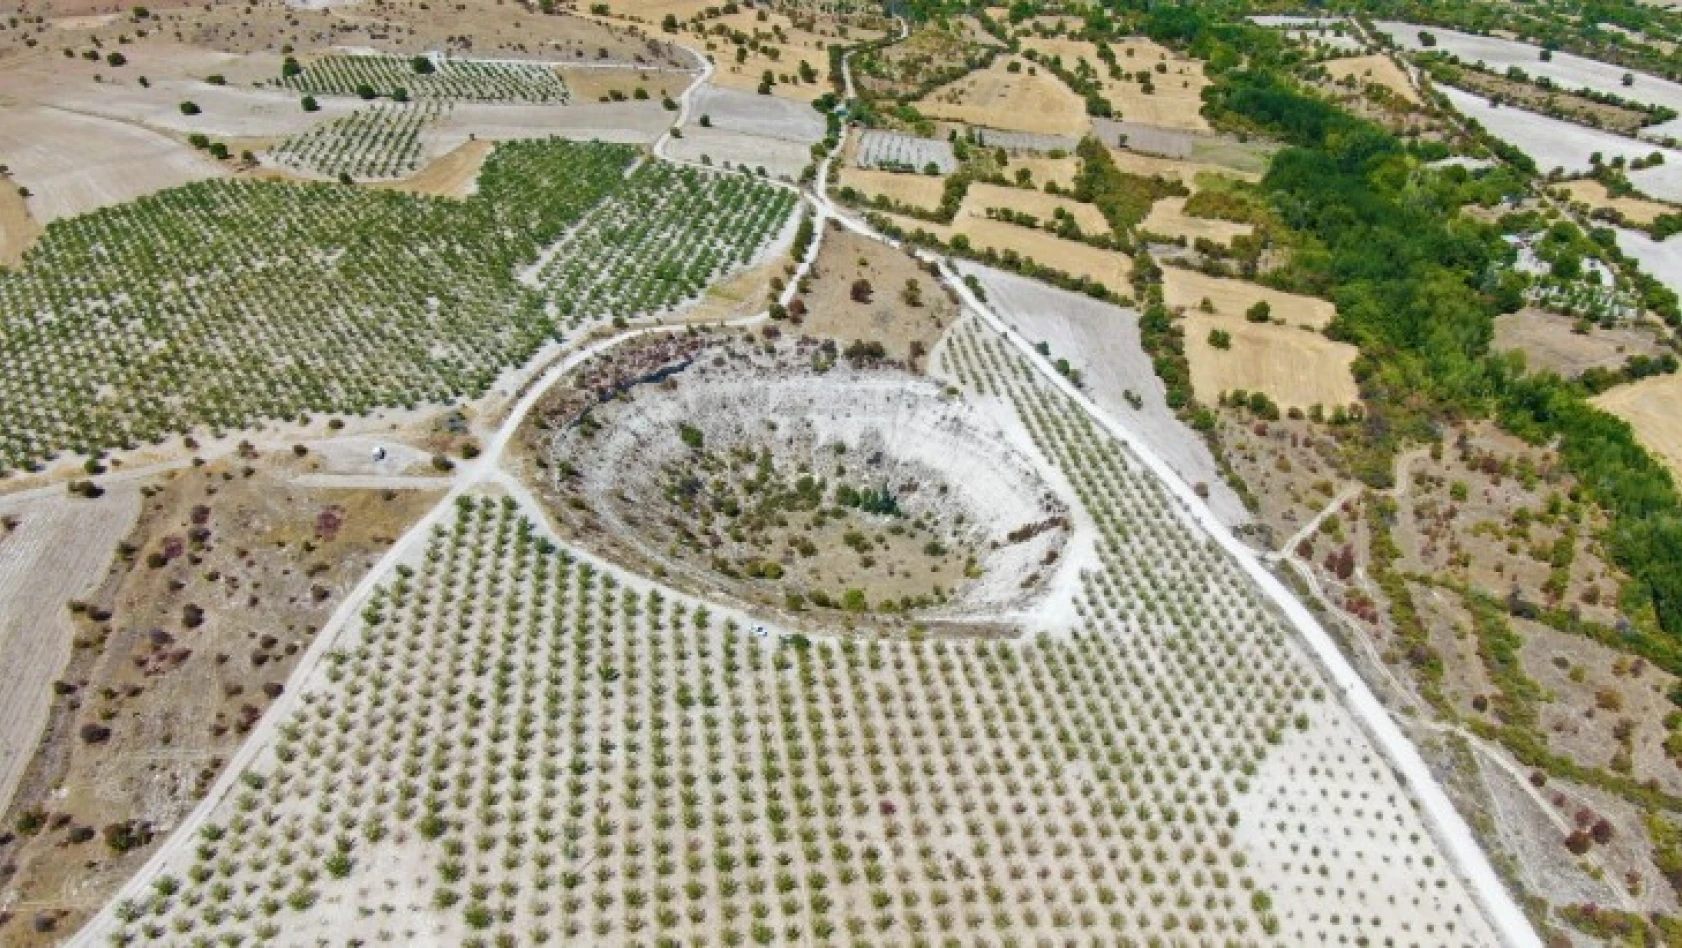 Elazığ'da bulunan 'Kup çukurunun' turizme kazandırılması isteniyor